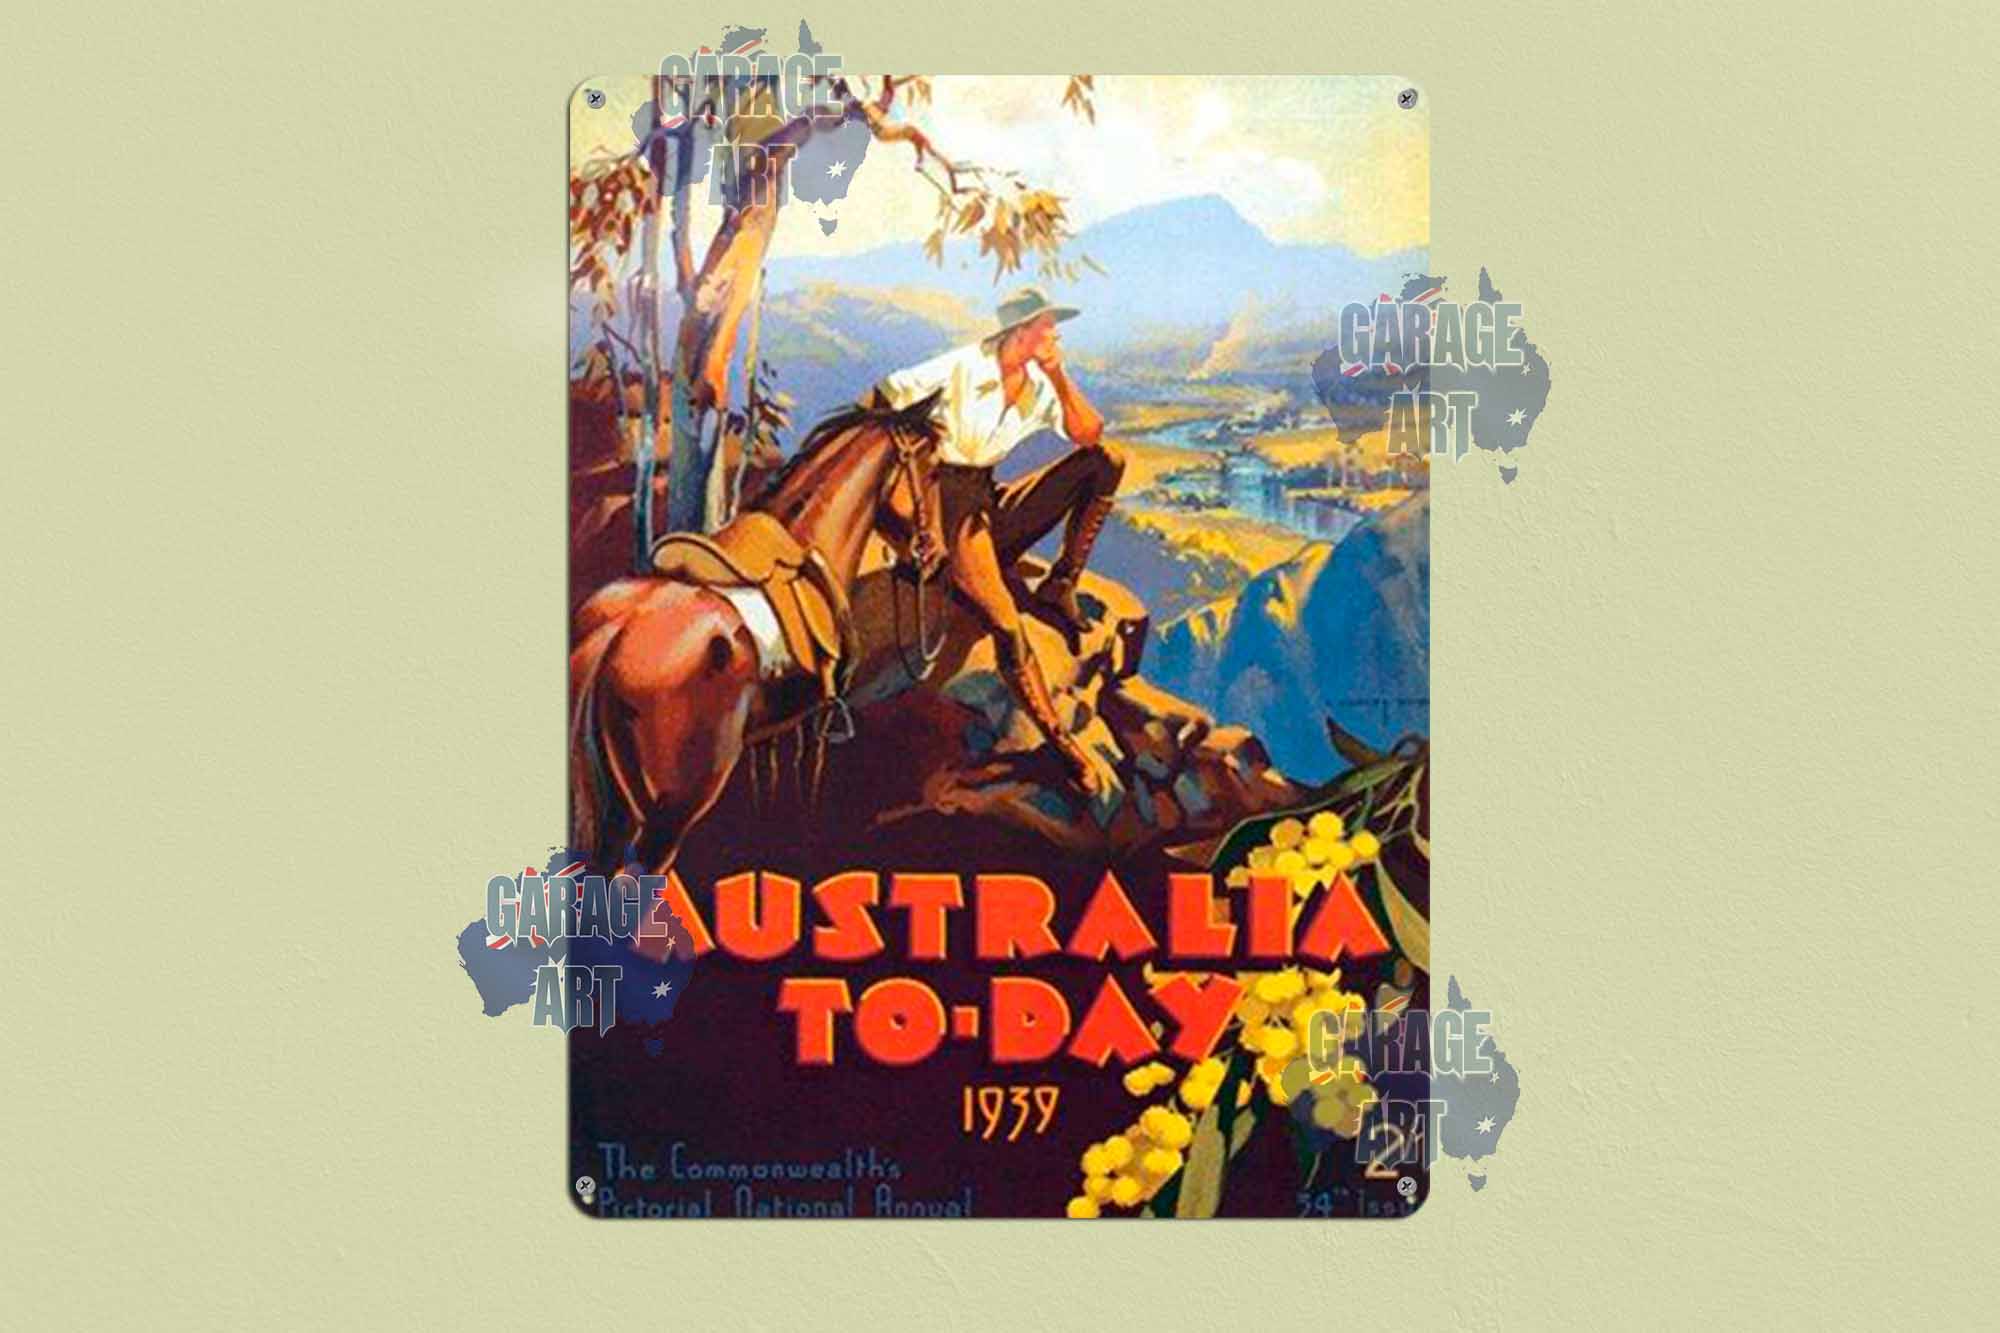 Australia To Day 1939 Tin Sign freeshipping - garageartaustralia